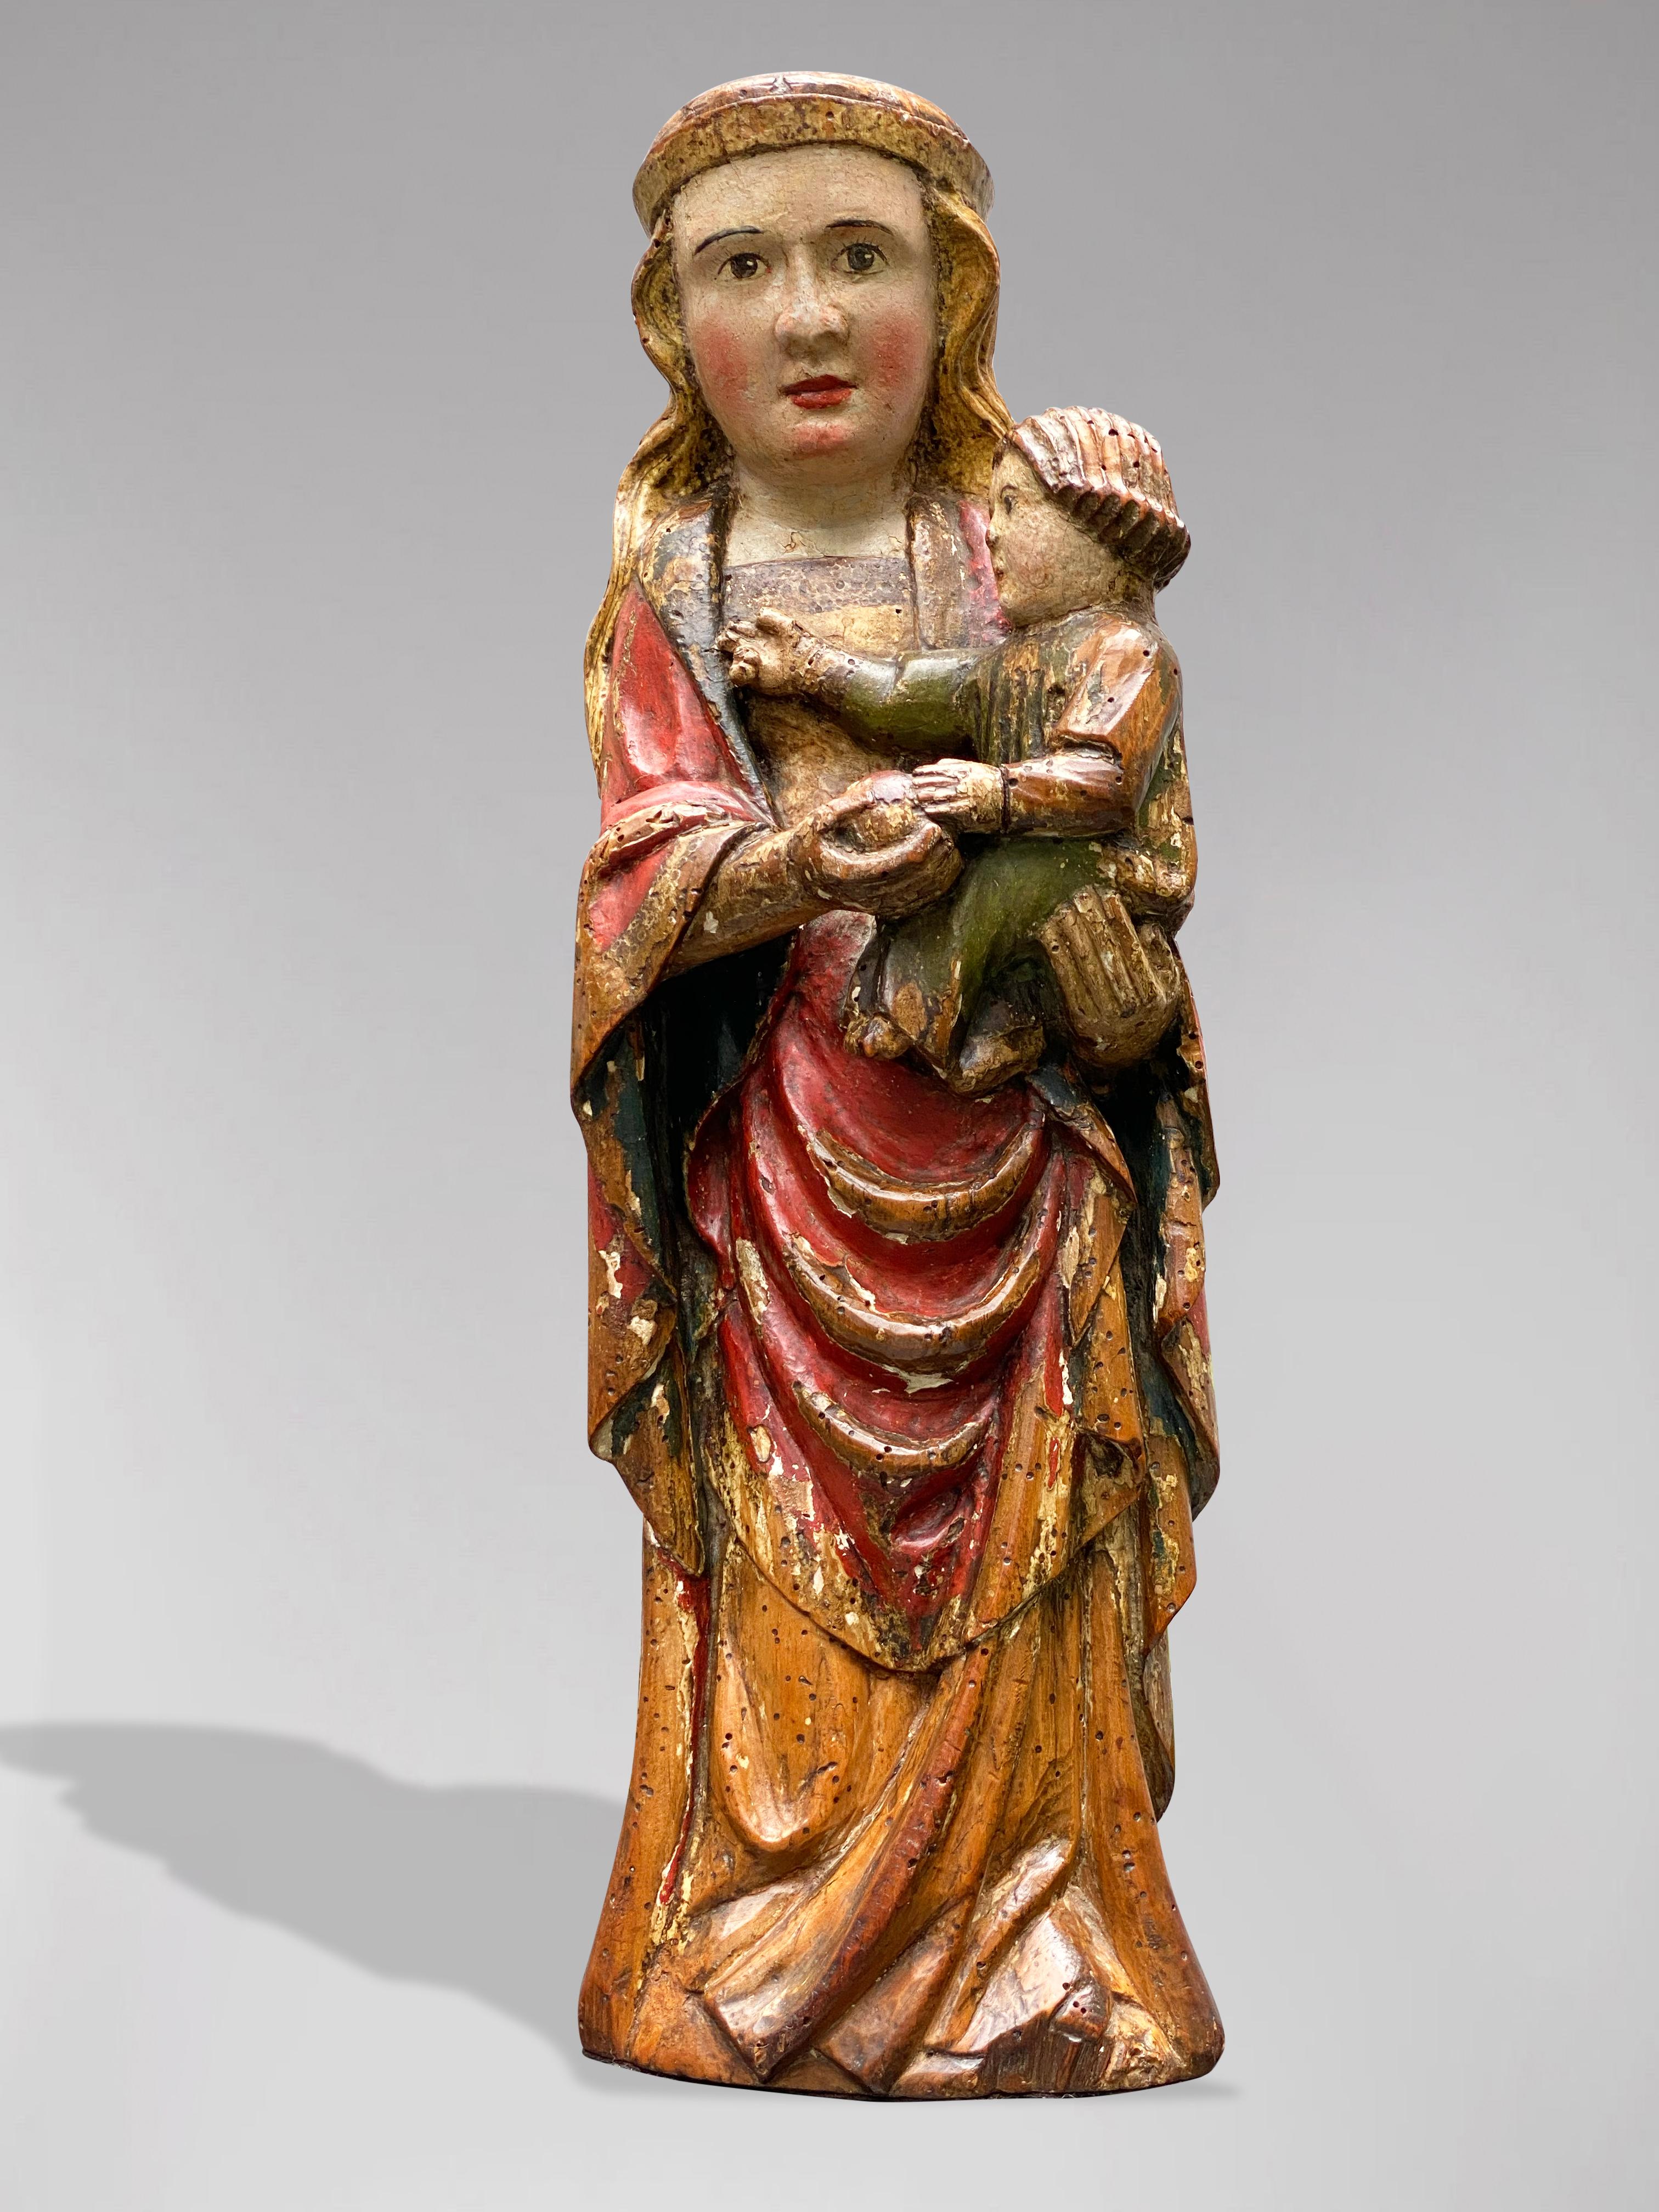 Spanische Statue der Jungfrau Maria mit dem Kind Jezus, um 1600